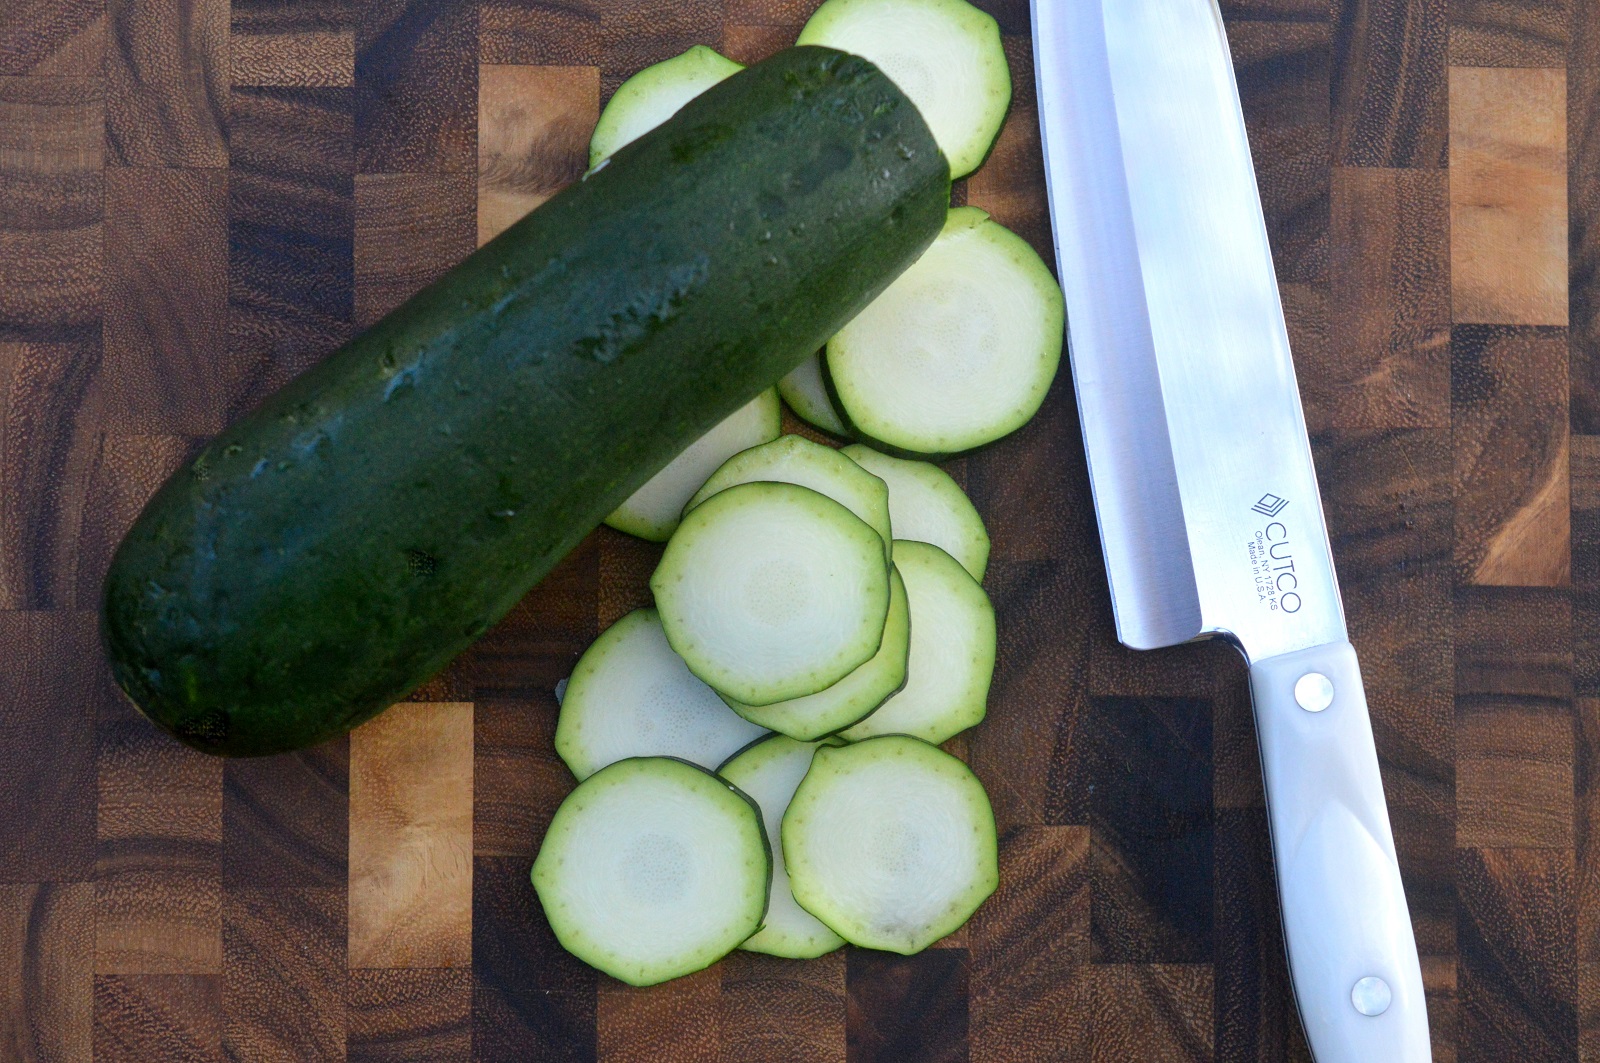 Cutting zucchini with Cutco Knife